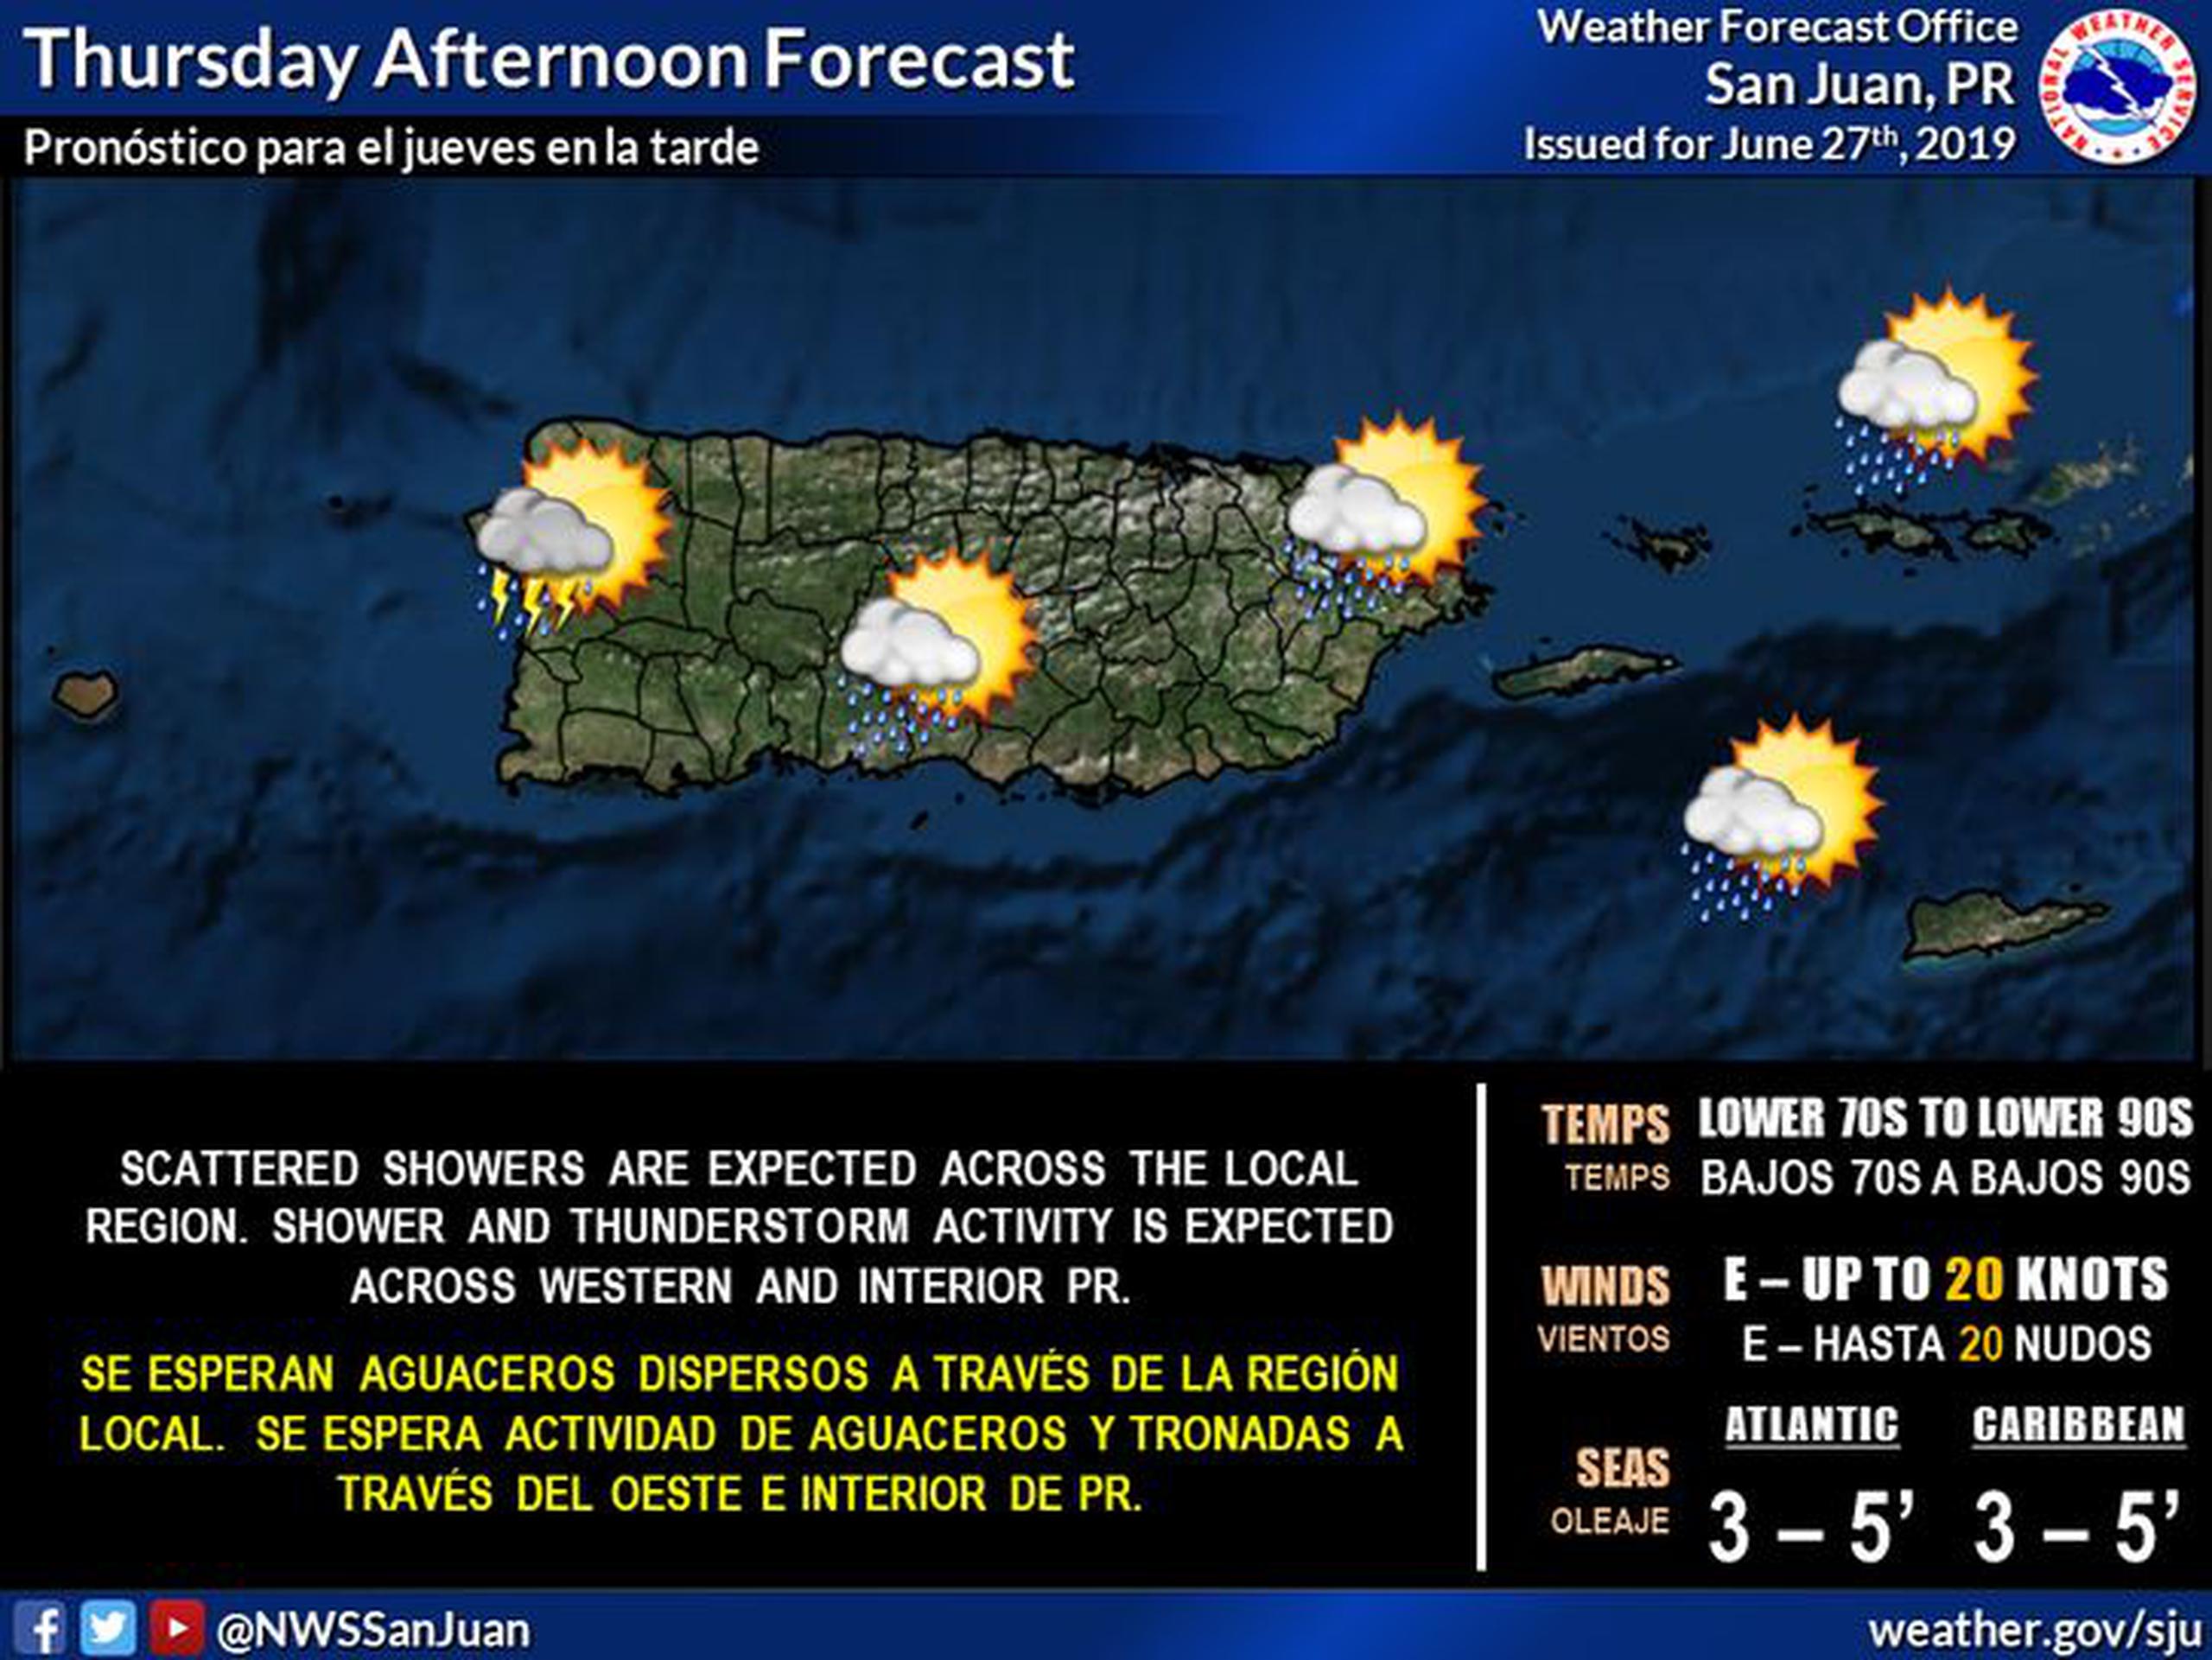 Podrían desarrollarse tronadas en la zona oeste e interior de Puerto Rico durante la tarde de hoy, jueves. (Servicio Nacional de Meteorología)